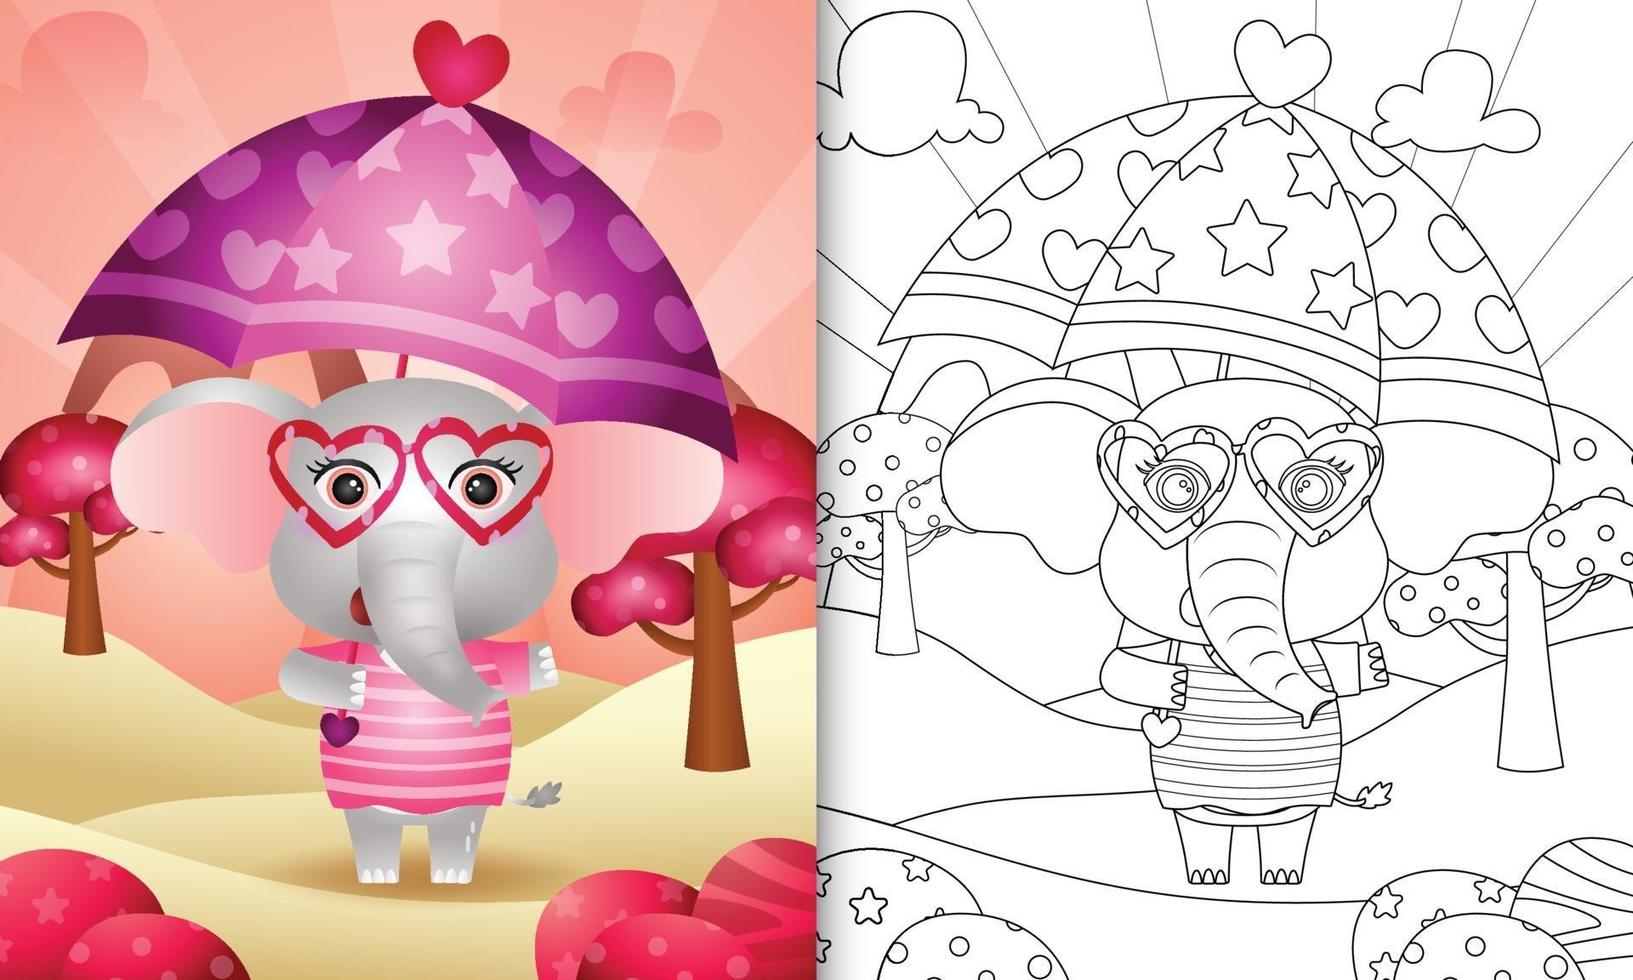 livro de colorir para crianças com um elefante fofo segurando guarda-chuva com o tema do dia dos namorados vetor